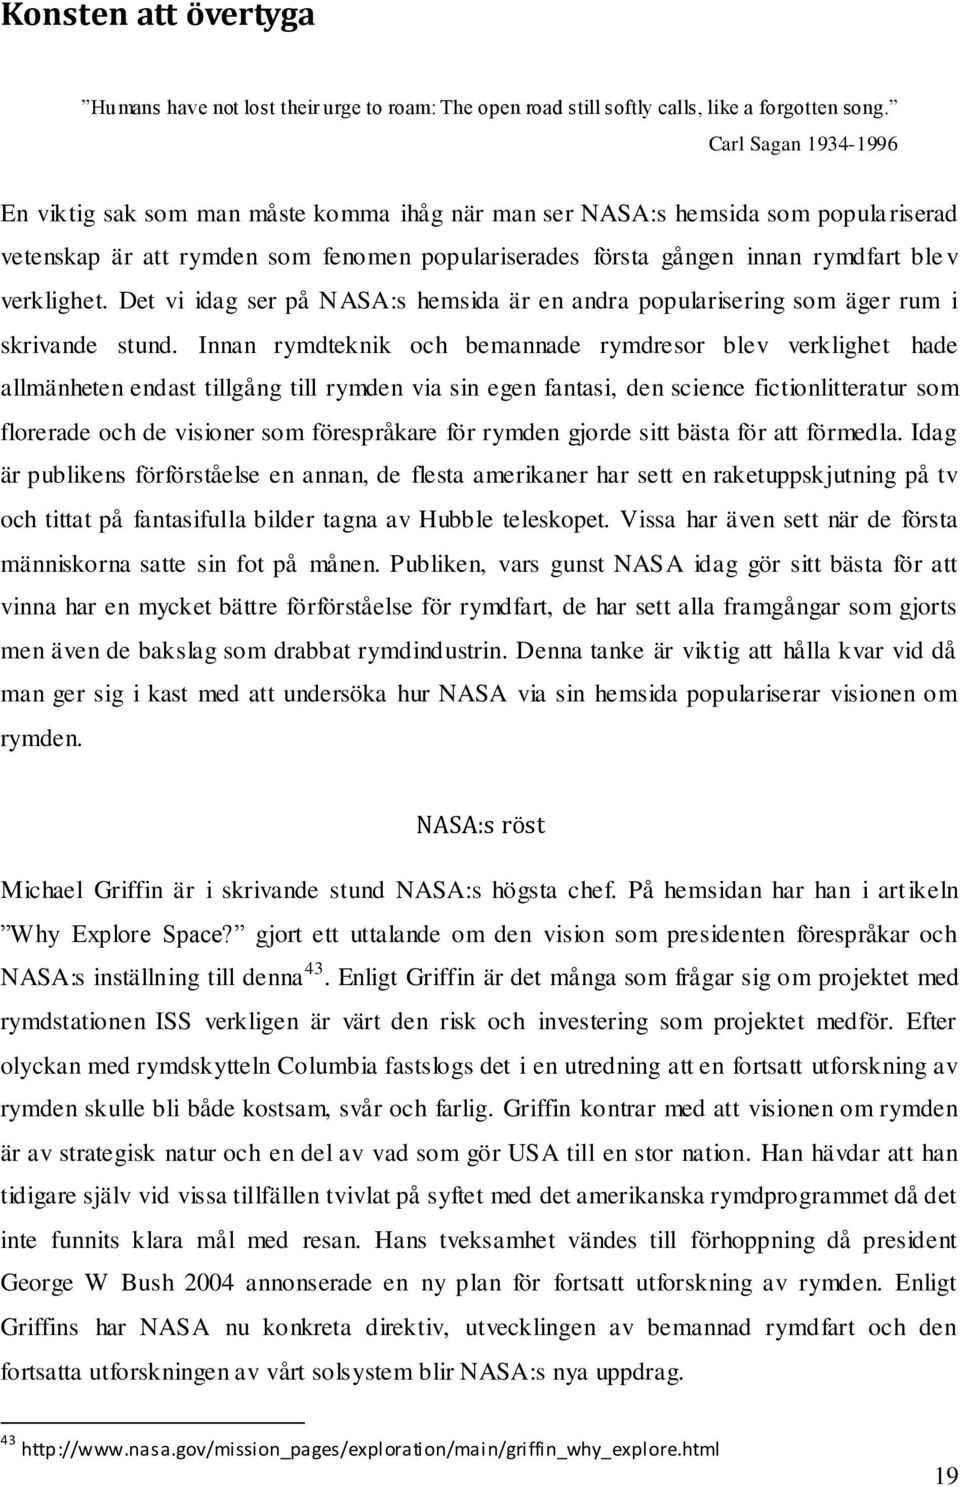 verklighet. Det vi idag ser på NASA:s hemsida är en andra popularisering som äger rum i skrivande stund.